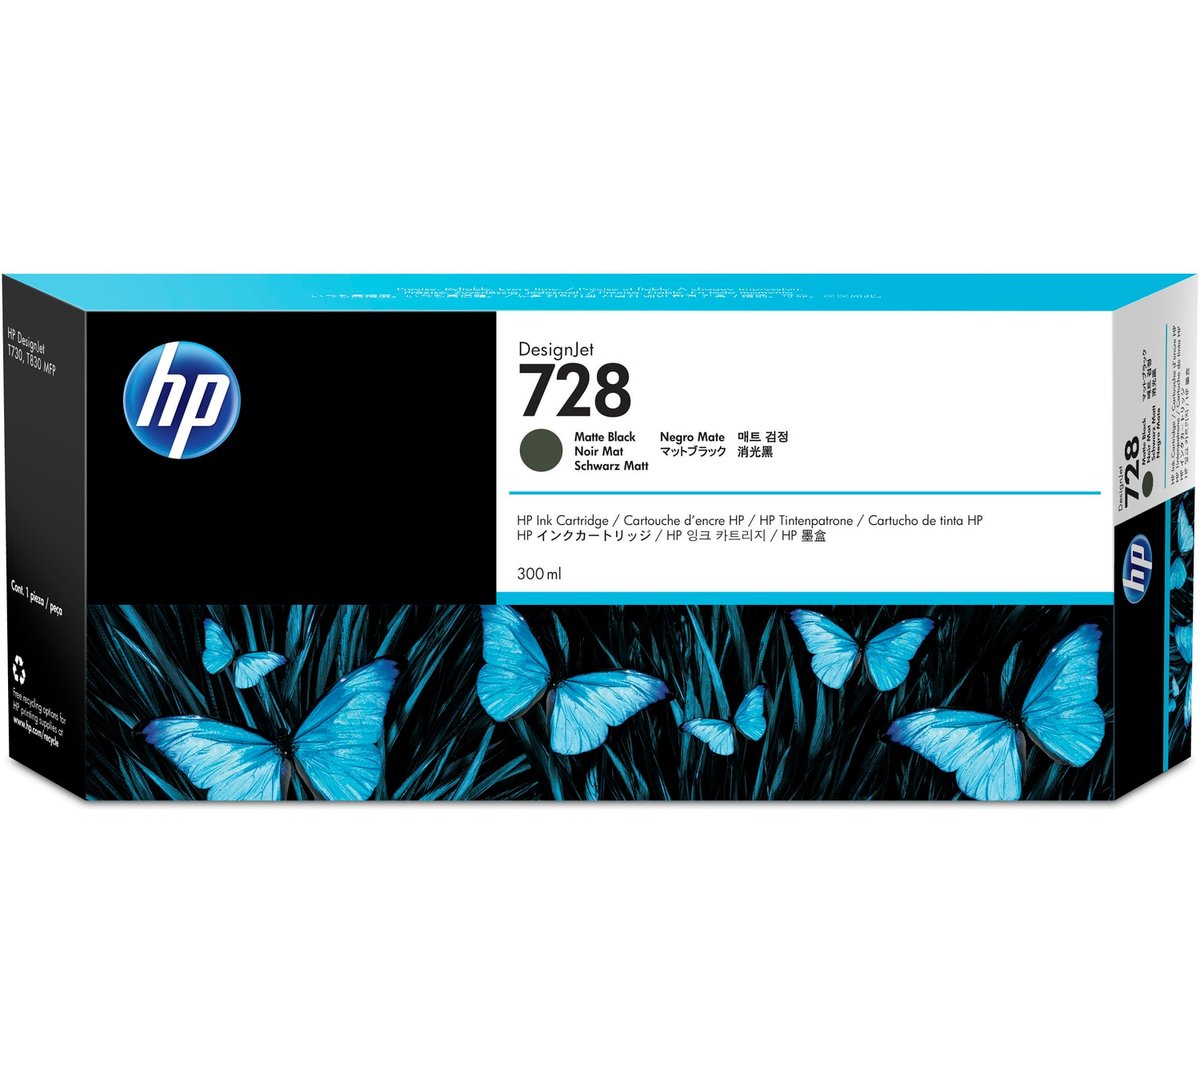 Картридж HP F9J68A 728 оригинальный цветной для принтеров DesignJet T730 | DesignJet T830